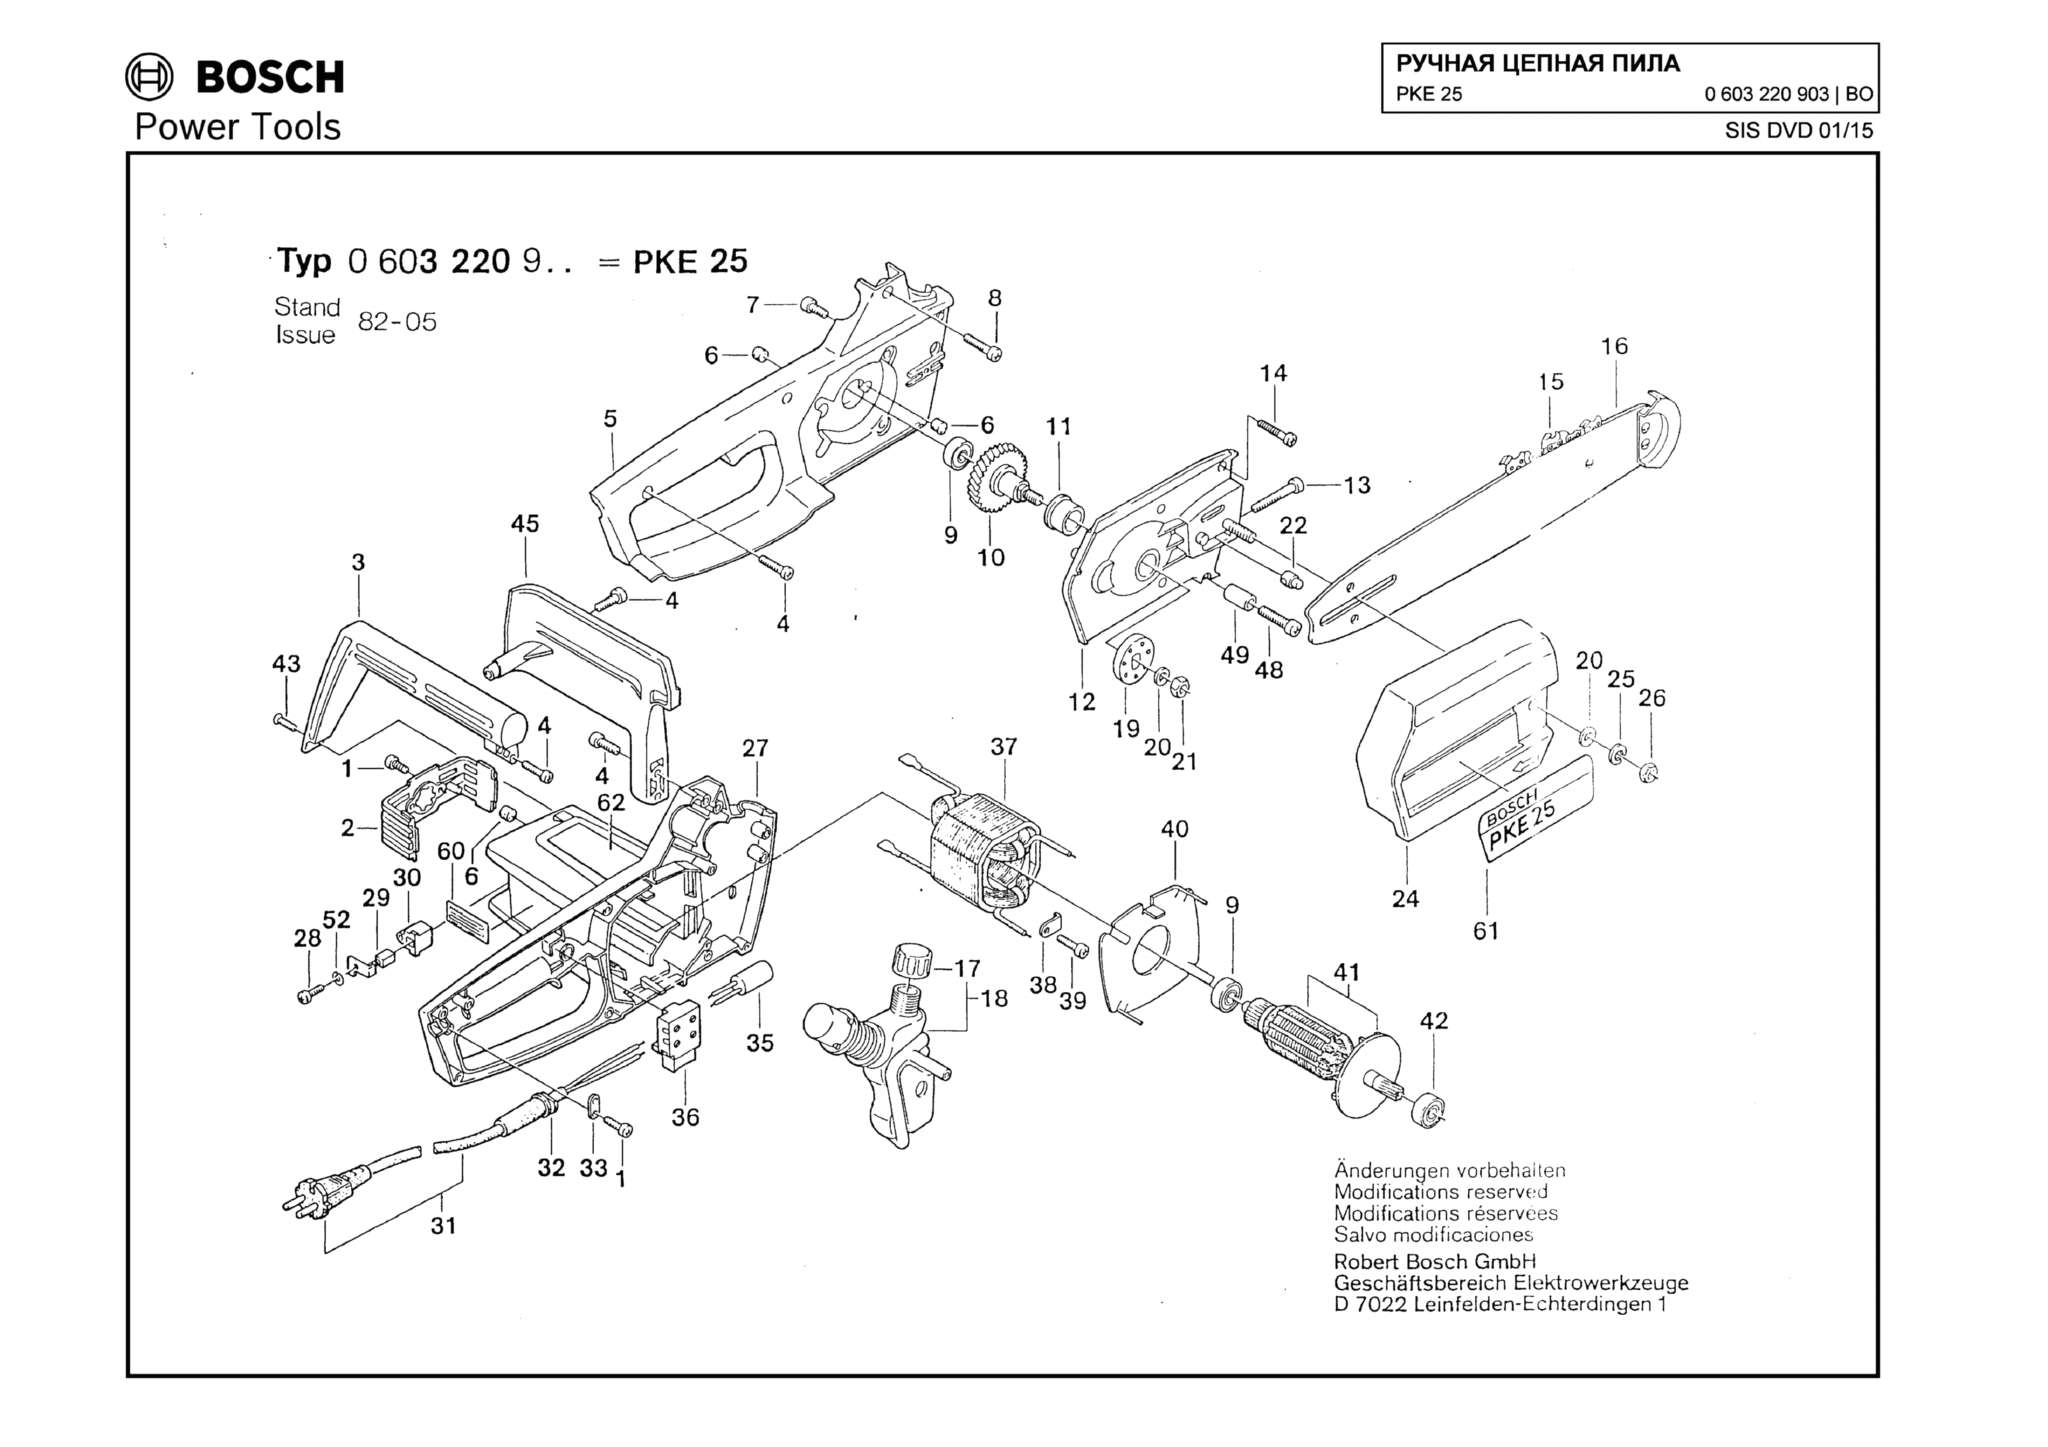 Запчасти, схема и деталировка Bosch PKE 25 (ТИП 0603220903)